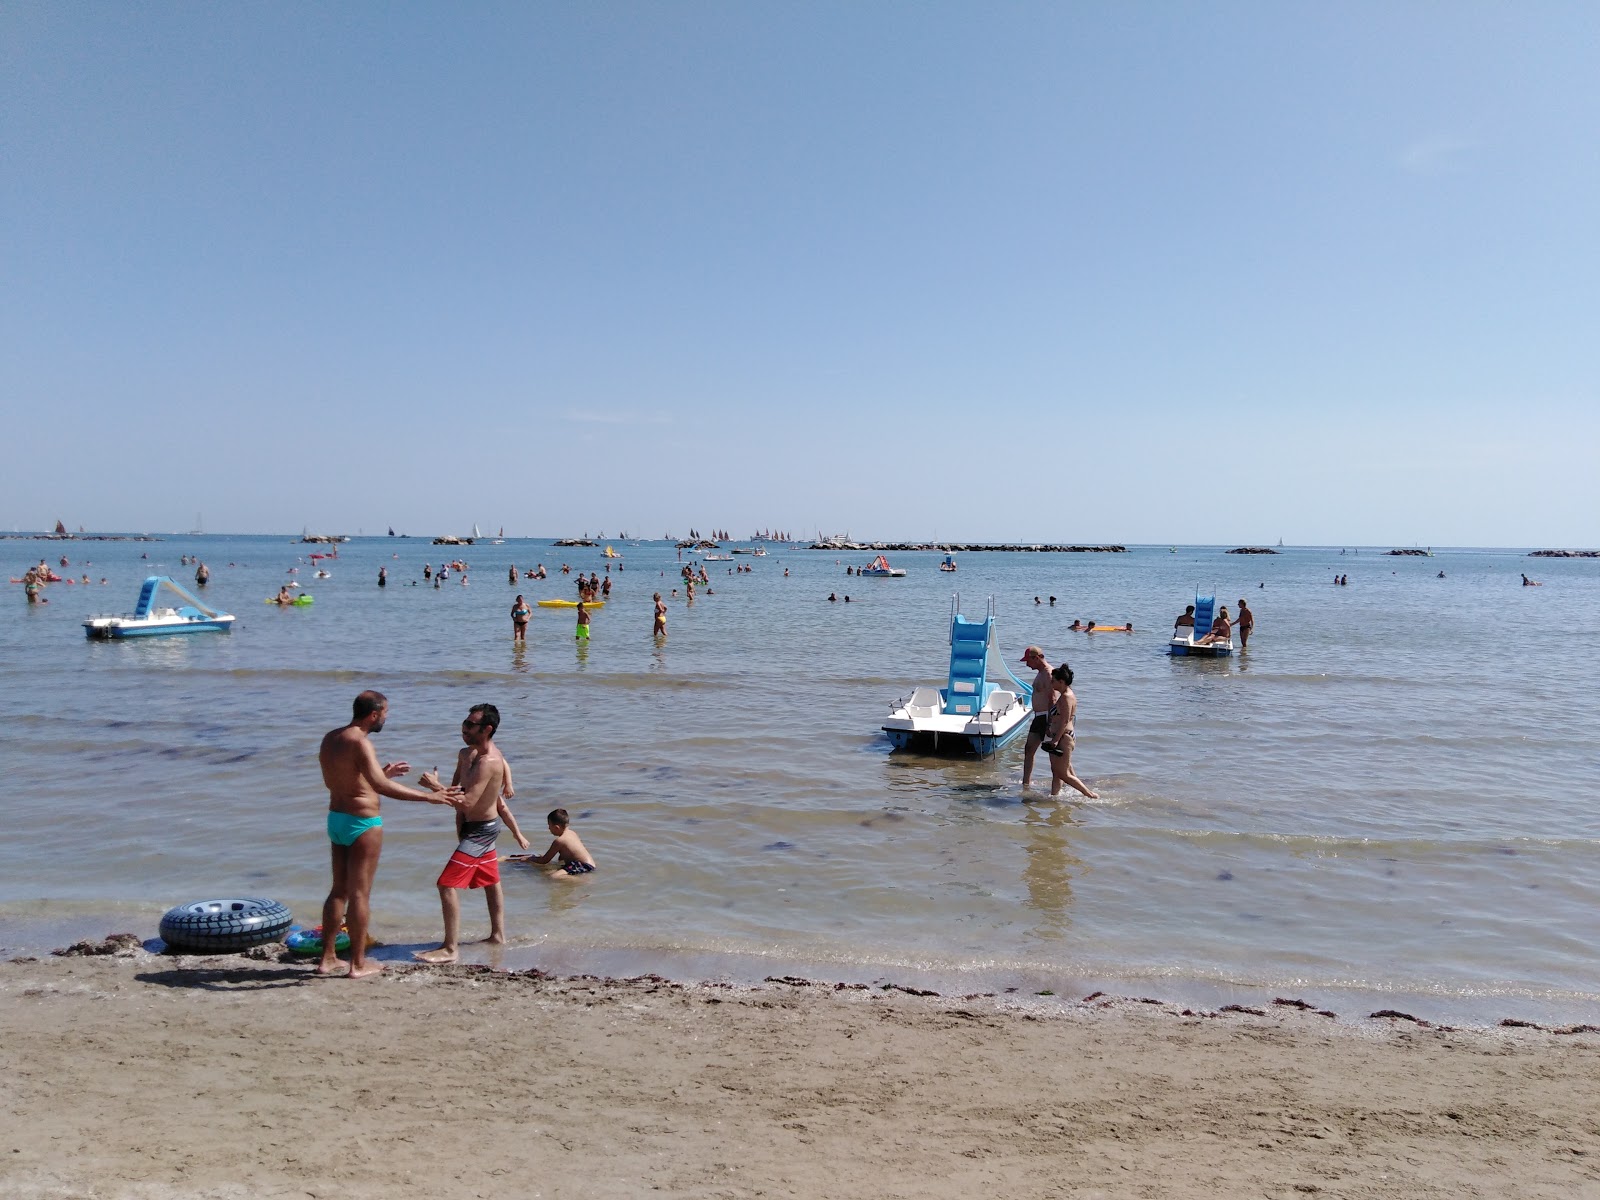 Fotografie cu Plaja Liberă Cesenatico cu o suprafață de apa turcoaz